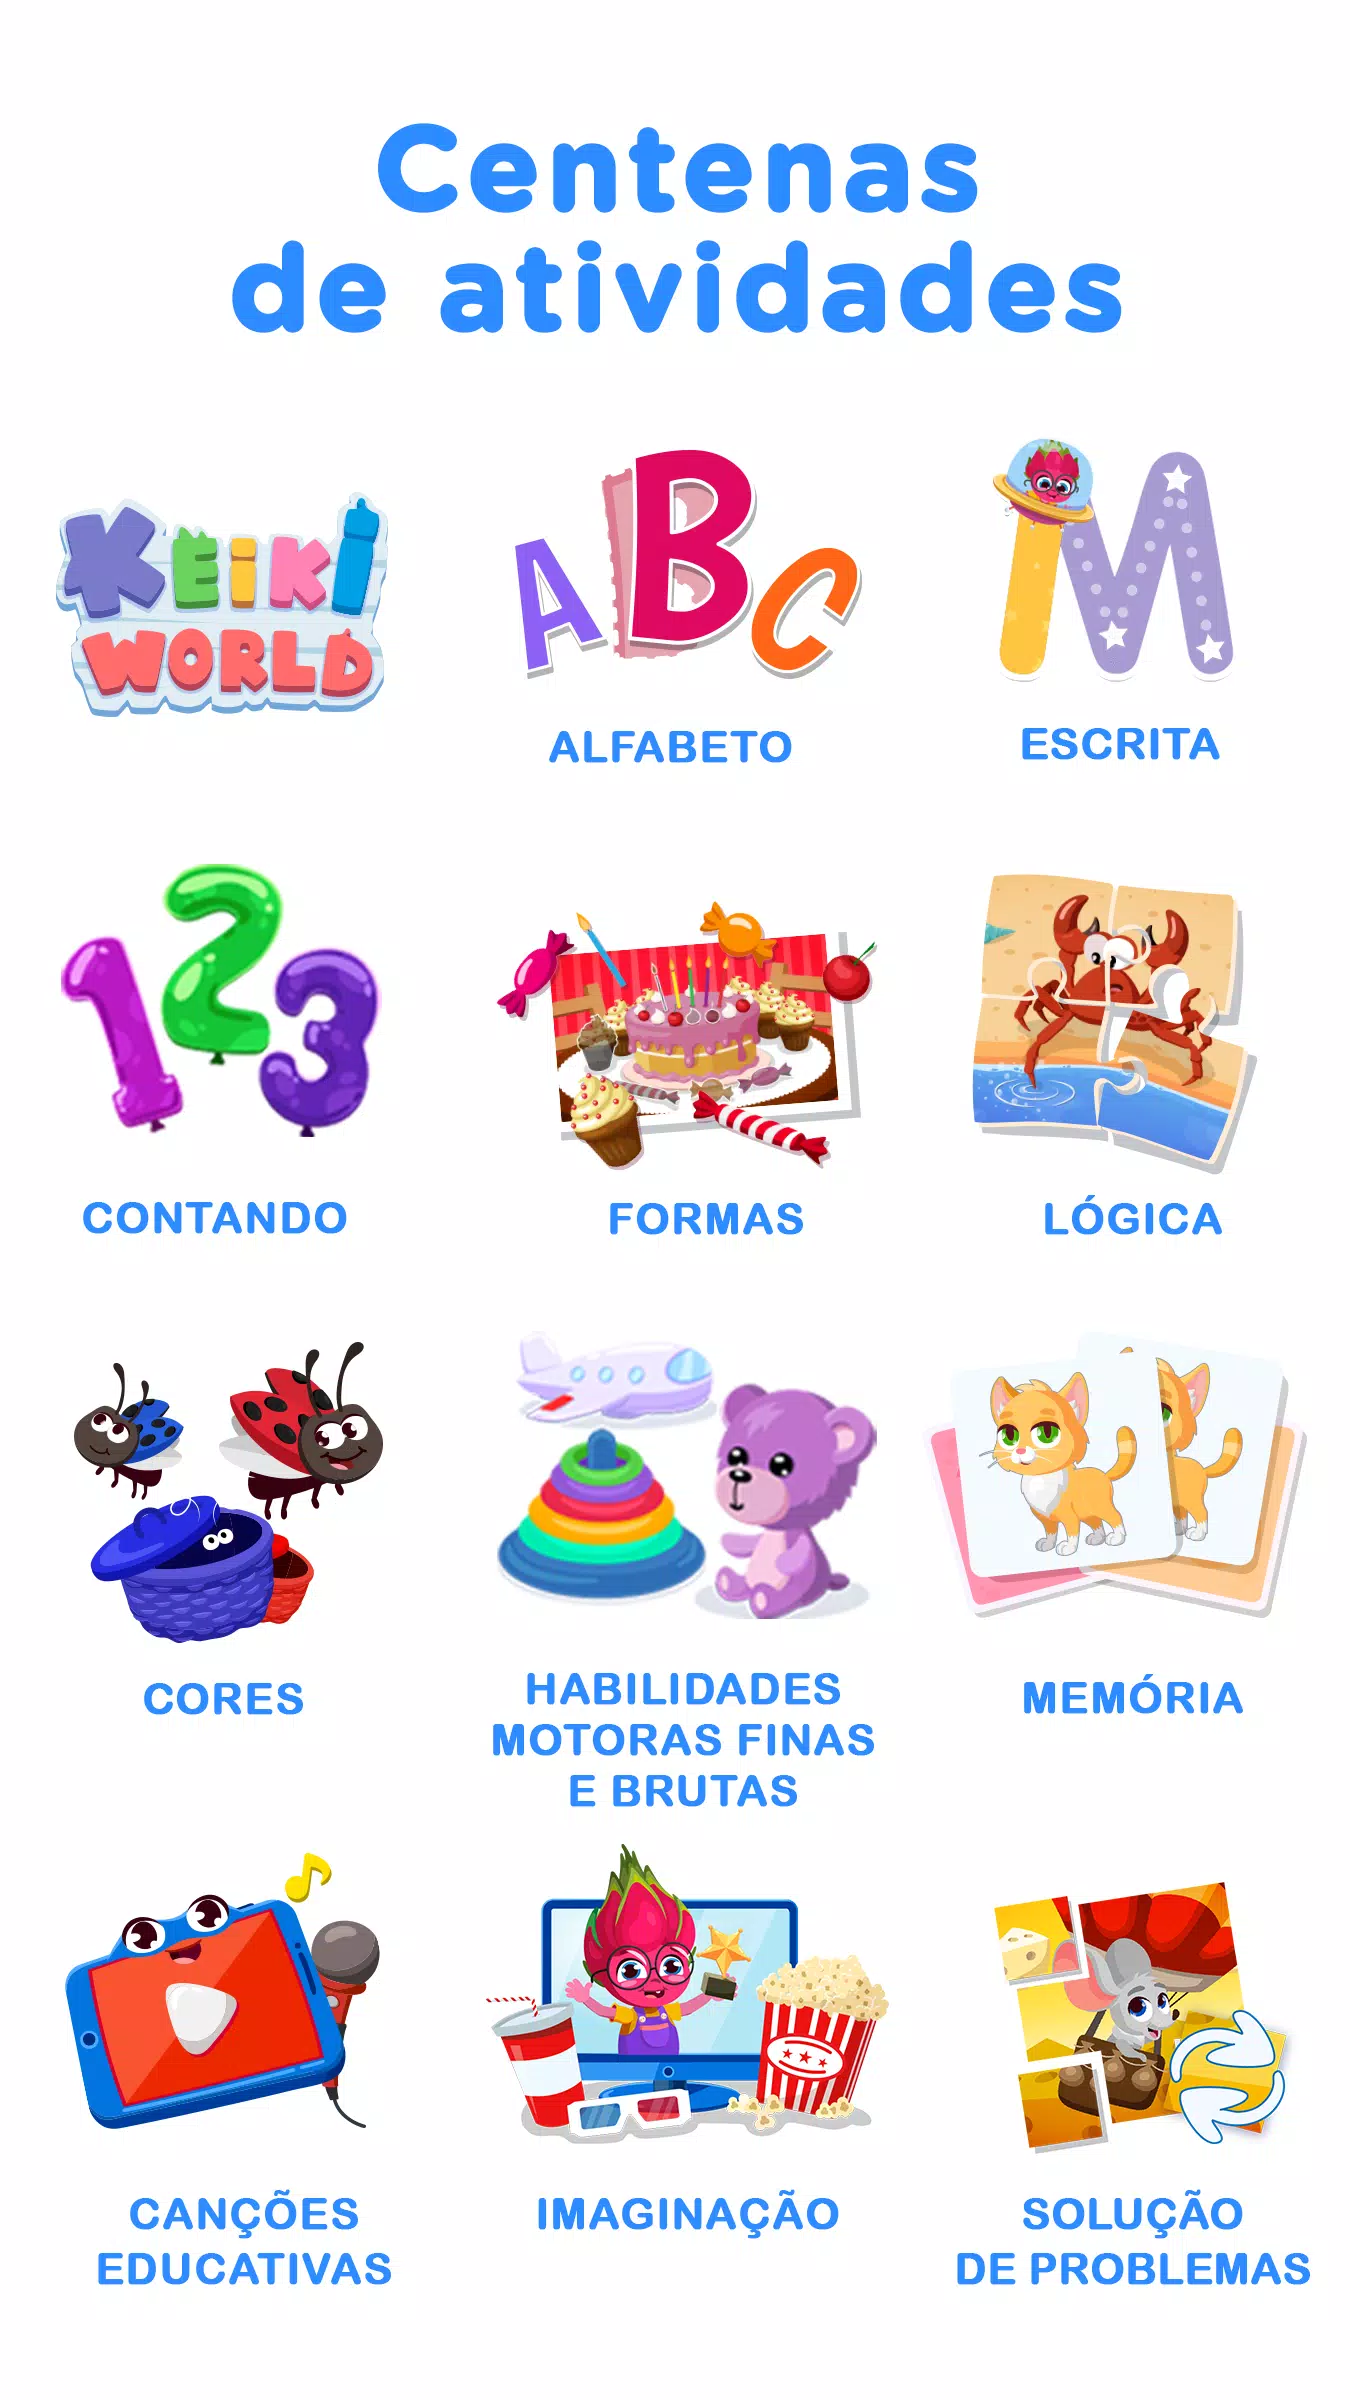 Baixar Grátis Keiki Jogos Crianças 4 anos APK para Android